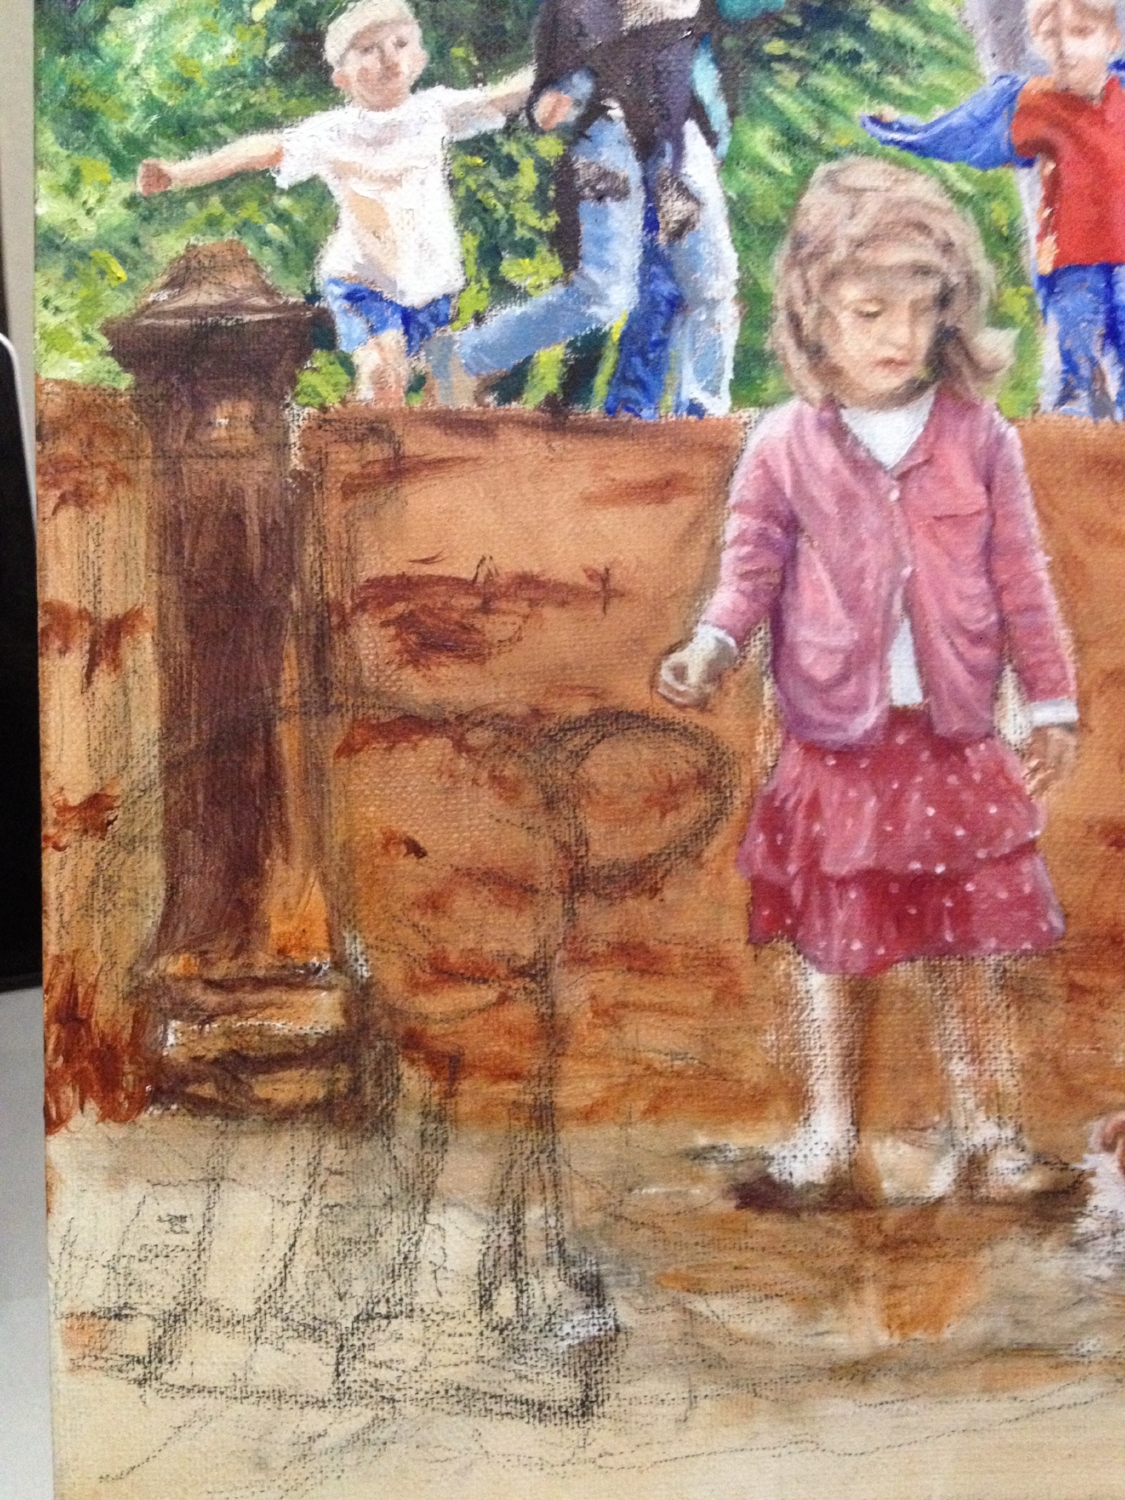 Kid in mud sketched in